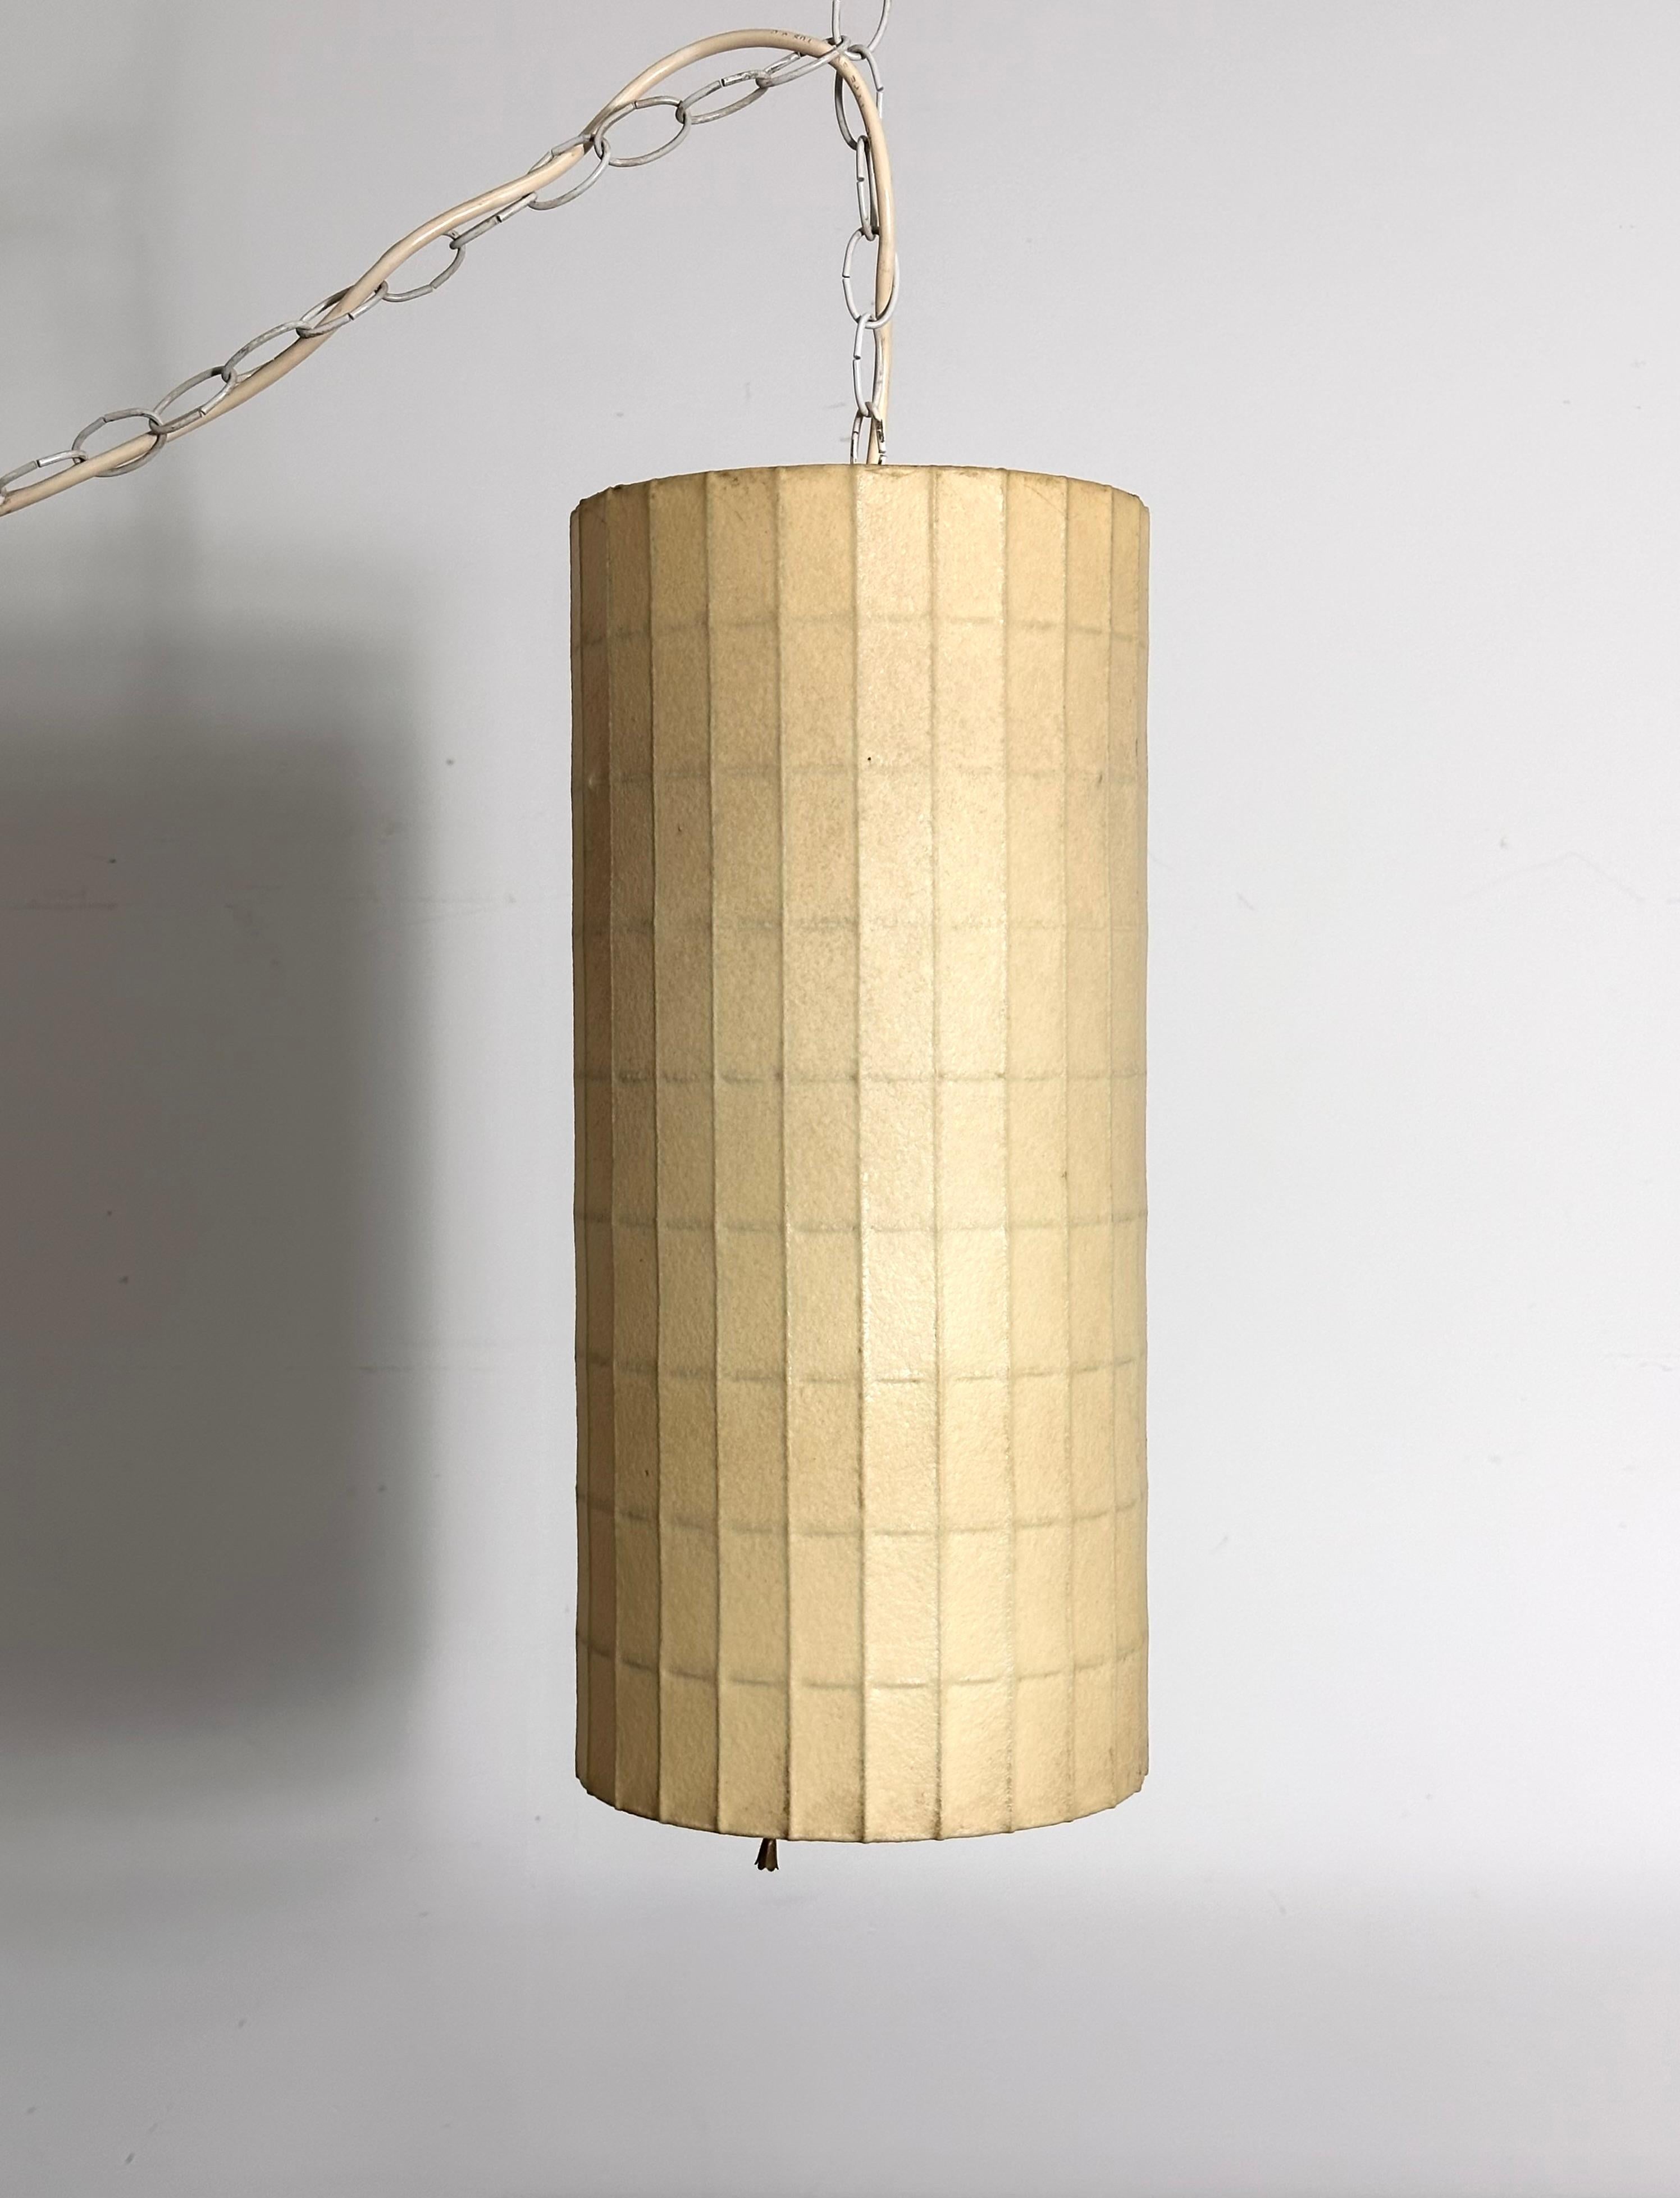 Rare lampe à bulles de forme cylindrique conçue par William Renwick de George Nelson & Associates pour Howard Miller, vers les années 1950.

Cadre en treillis d'acier revêtu du polymère à bandes signature de la lampe à bulles. 
Numéro de modèle